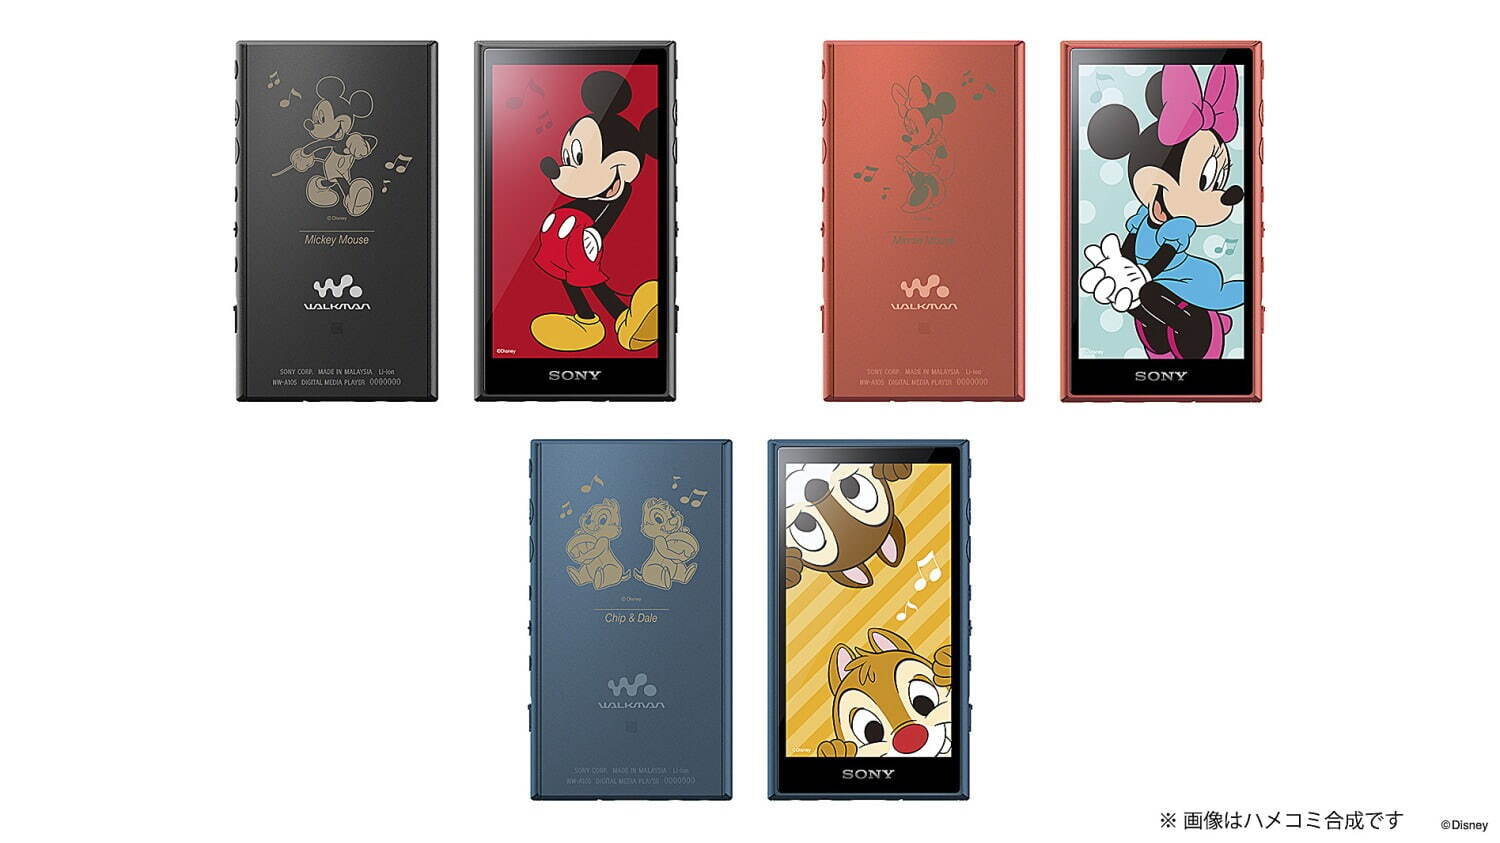 ウォークマン A100シリーズ Disney Collection
価格：16GB 34,000円＋税